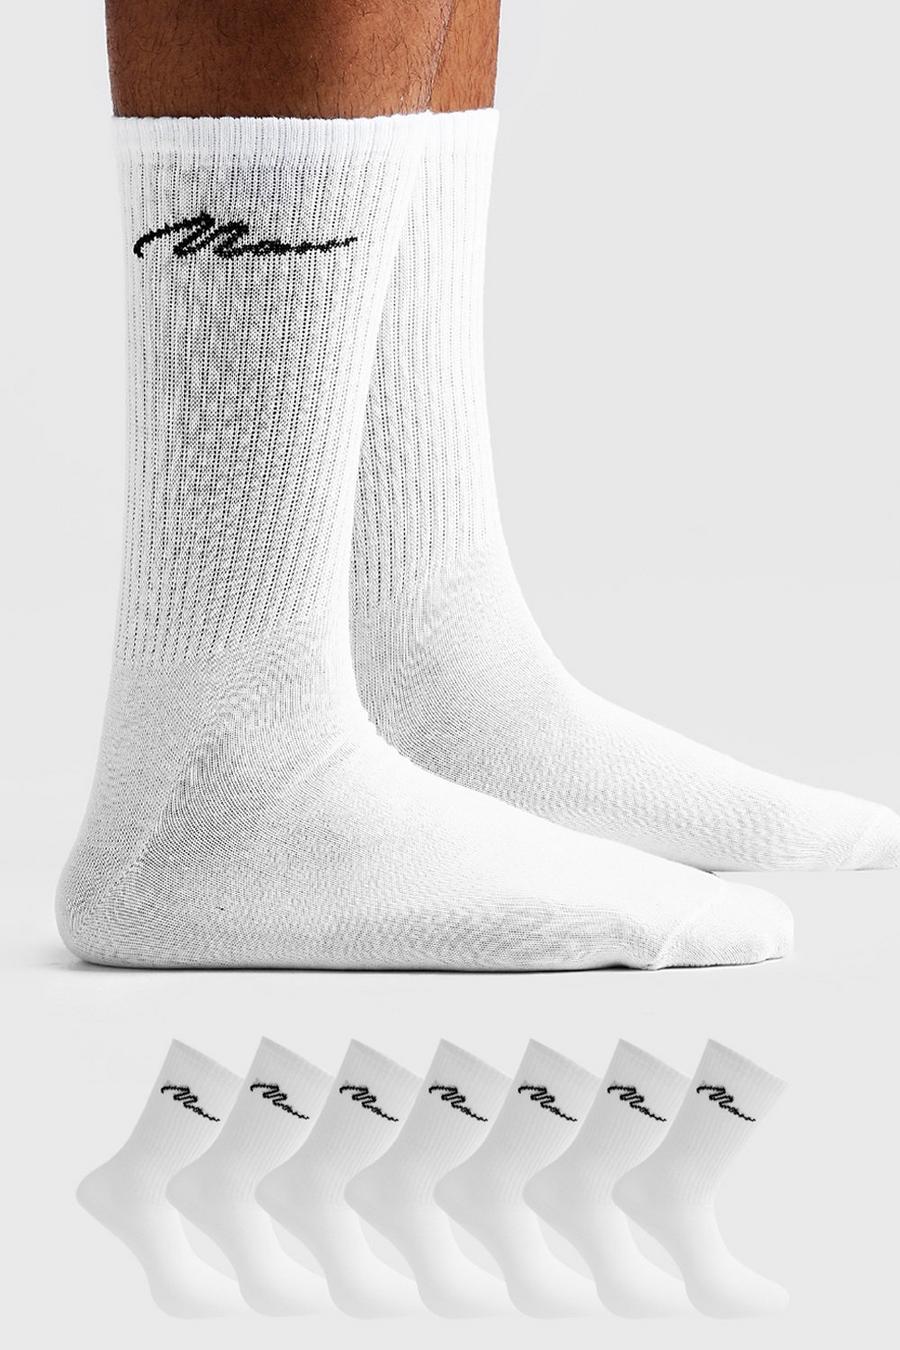 Lot de 7 paires de chaussettes sport - MAN, Blanc white